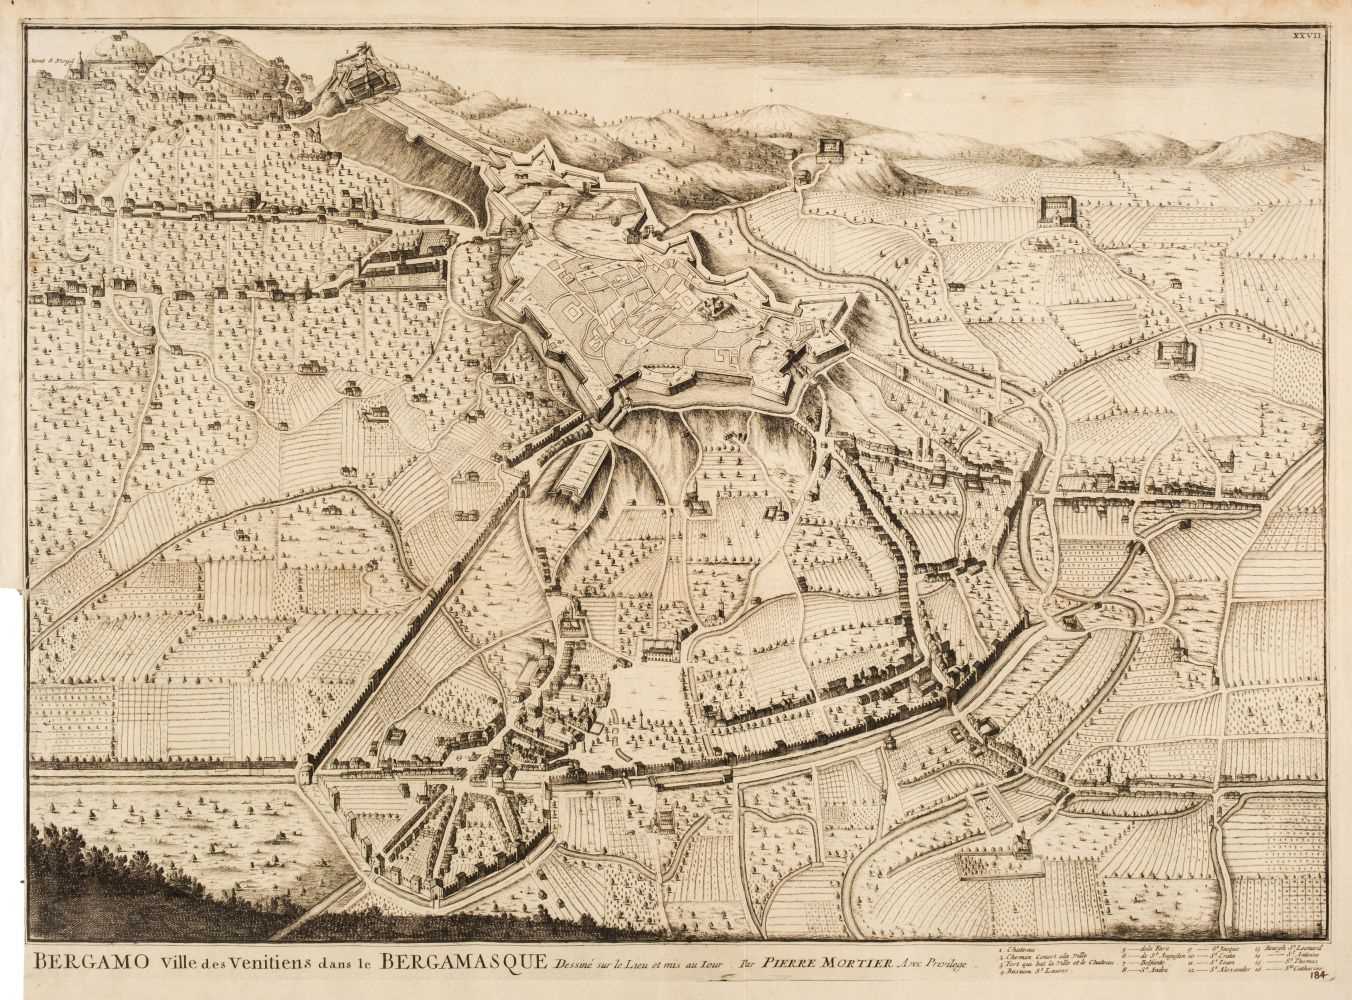 Lot 114 - Italy. Mortier (Pierre), Bergamo Ville des Venitiens dans le Bergamasque...., 1700 - 24